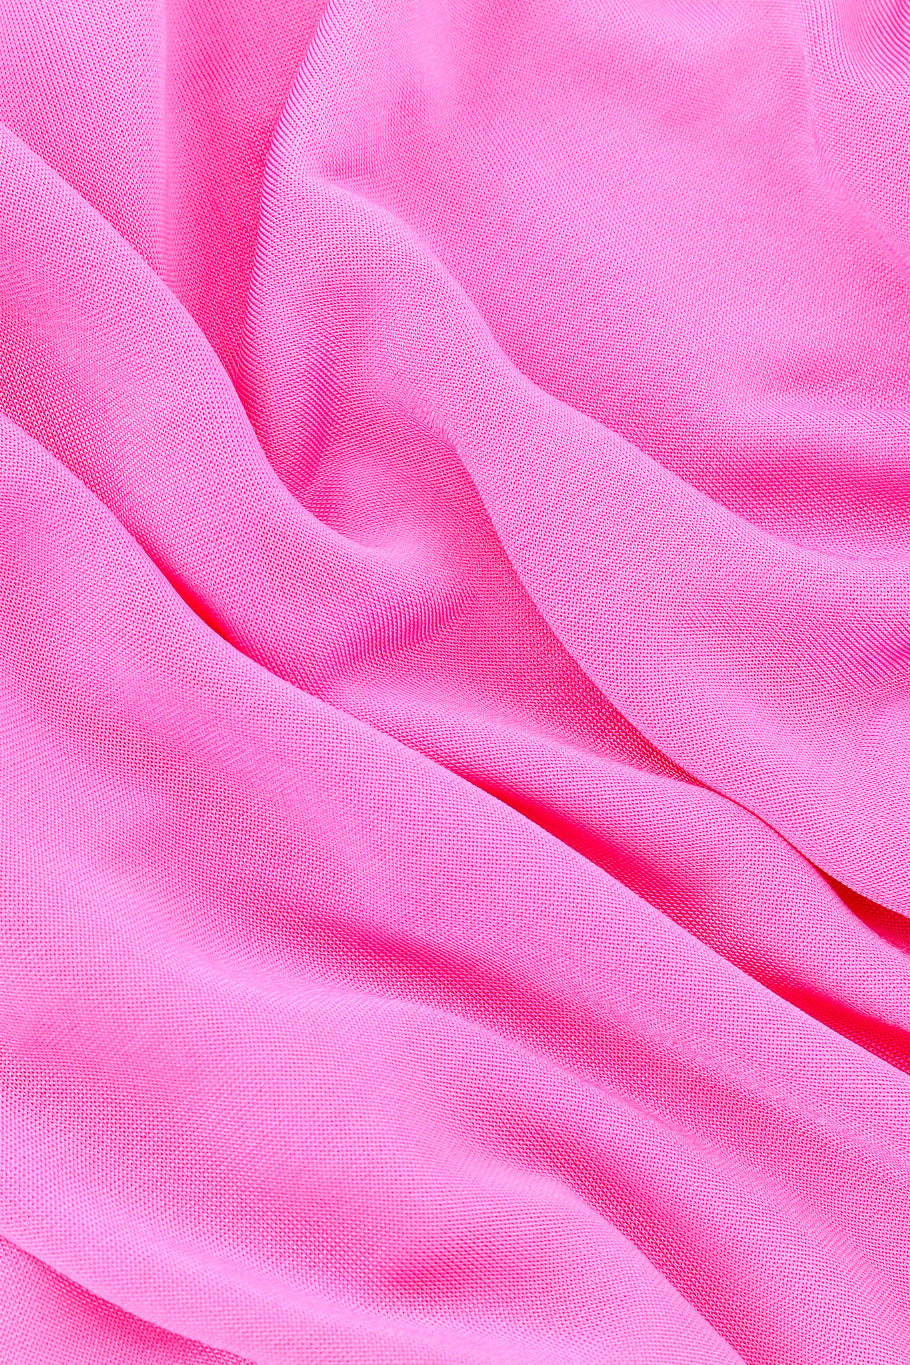 Versace Ruche One-Shoulder Dress fabric closeup @Recessla